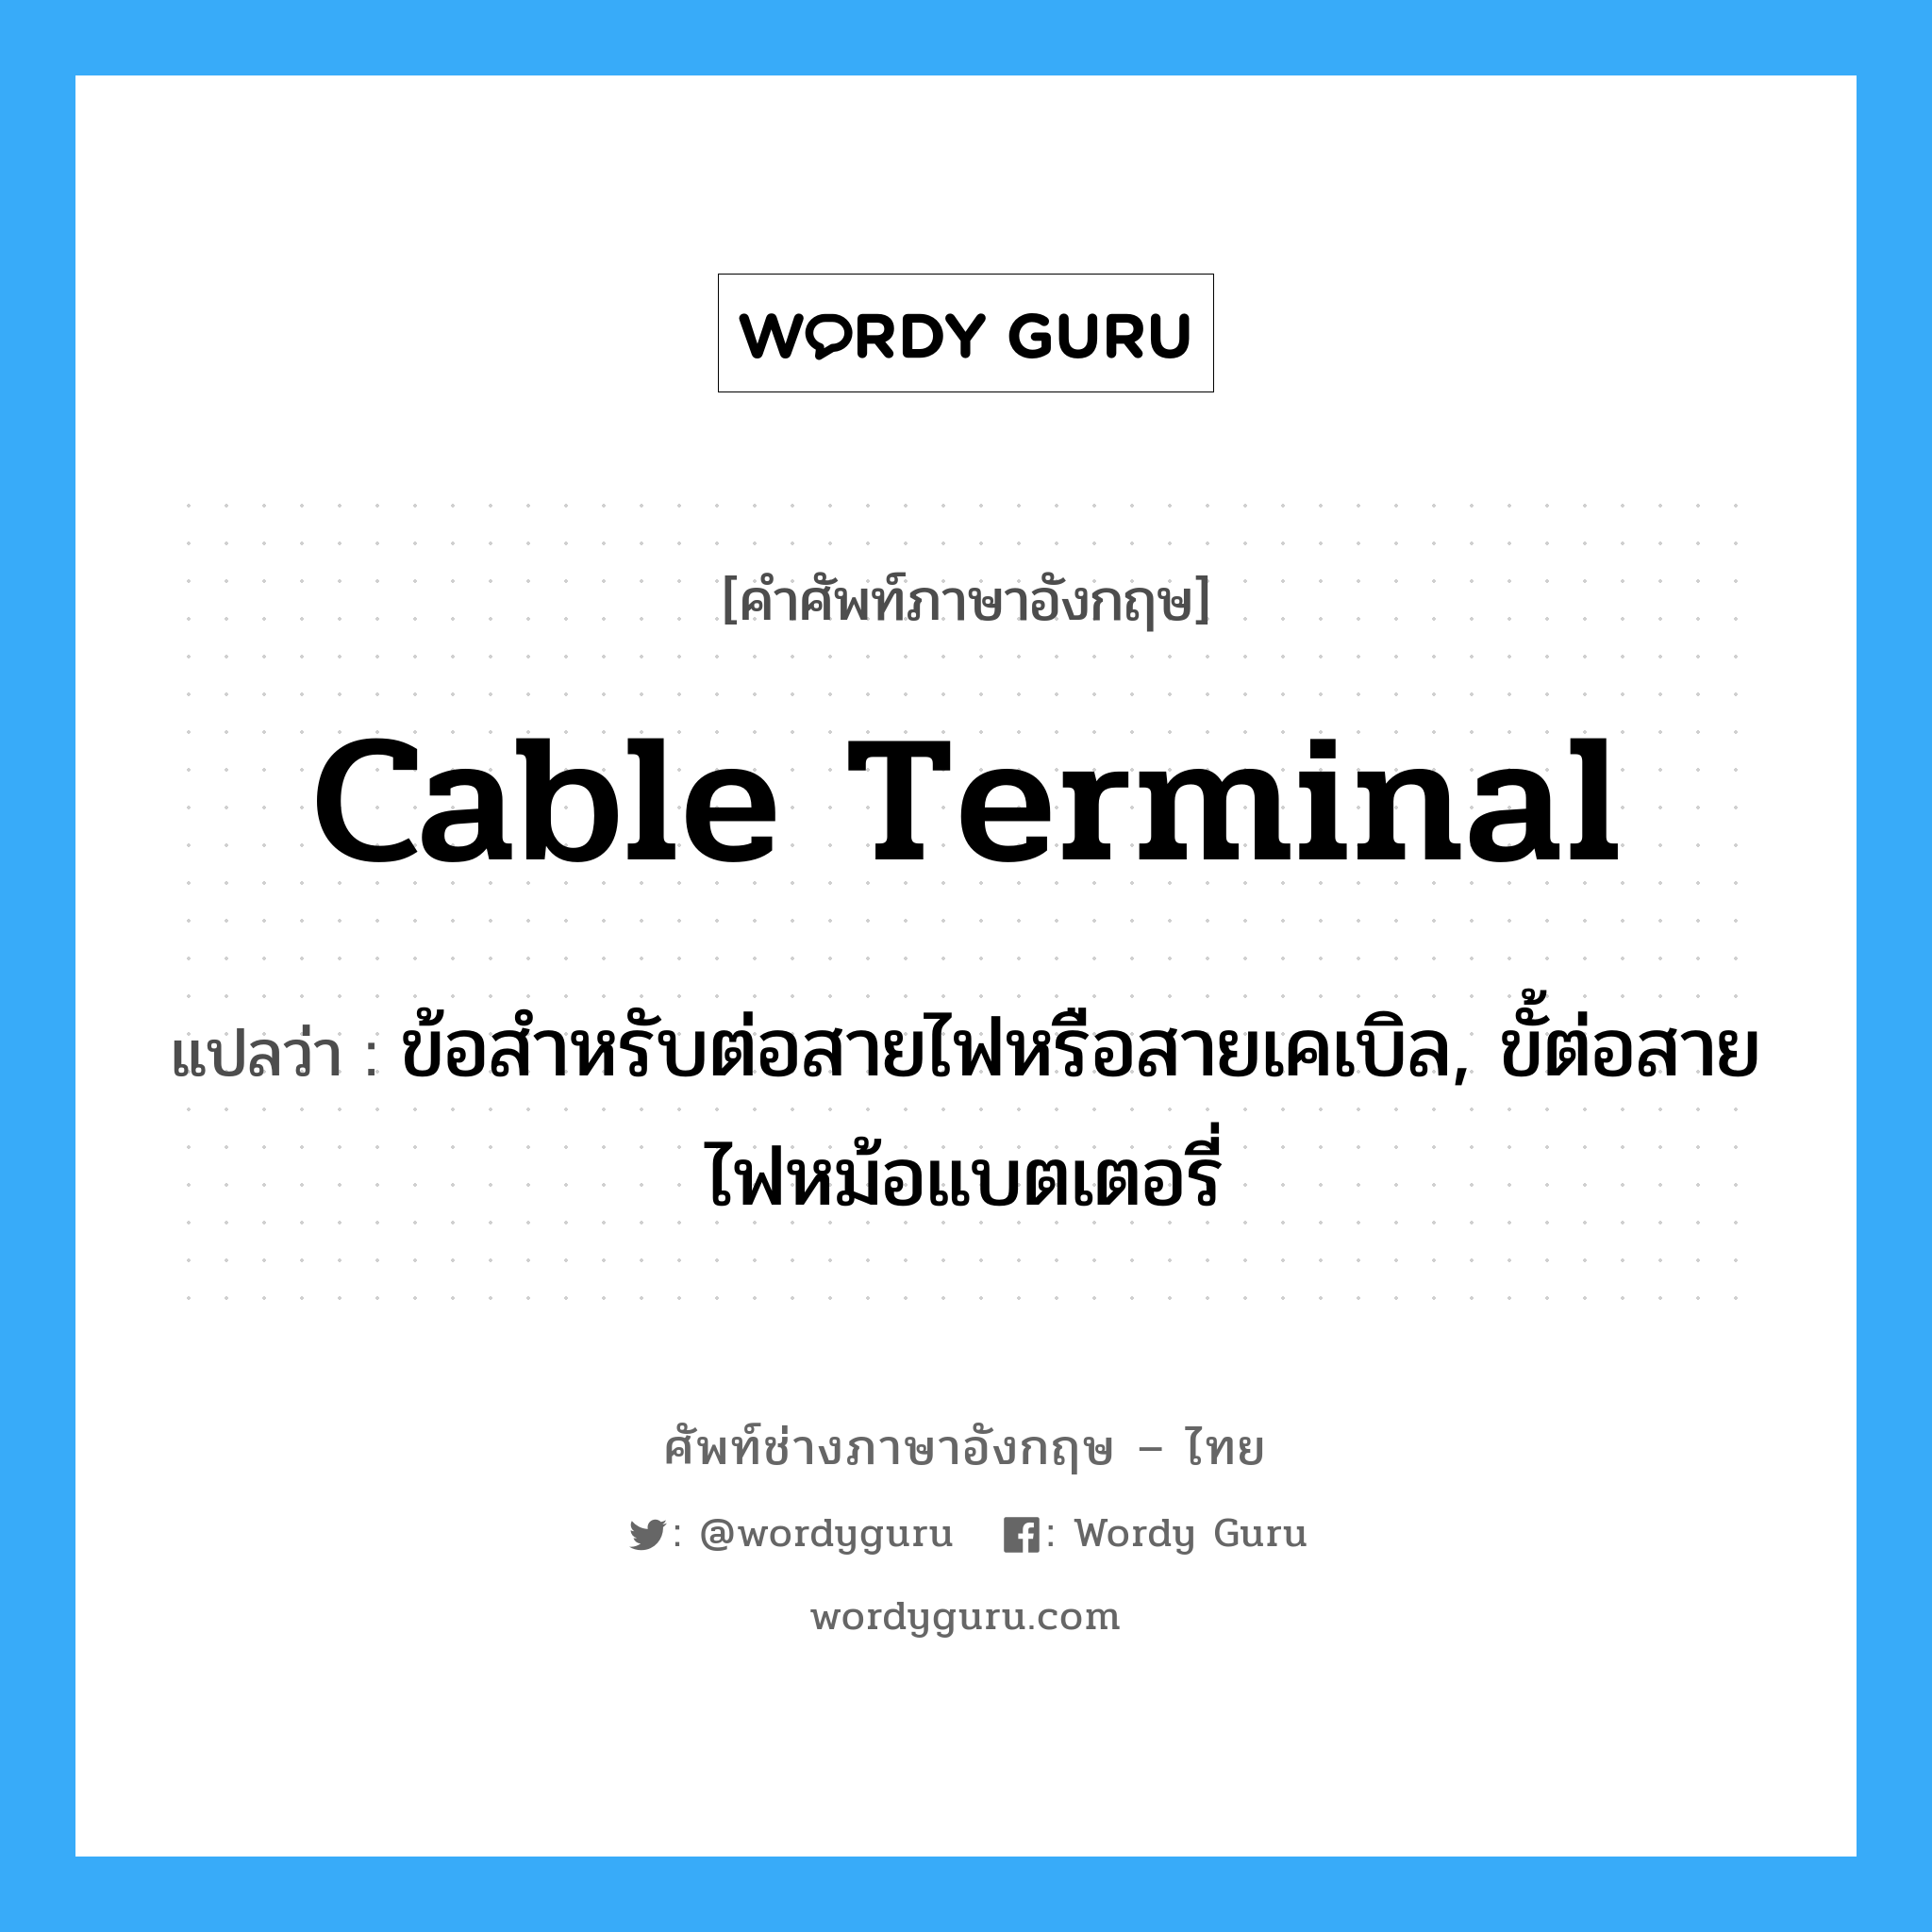 cable-terminal แปลว่า?, คำศัพท์ช่างภาษาอังกฤษ - ไทย cable terminal คำศัพท์ภาษาอังกฤษ cable terminal แปลว่า ข้อสำหรับต่อสายไฟหรือสายเคเบิล, ขั้ต่อสายไฟหม้อแบตเตอรี่